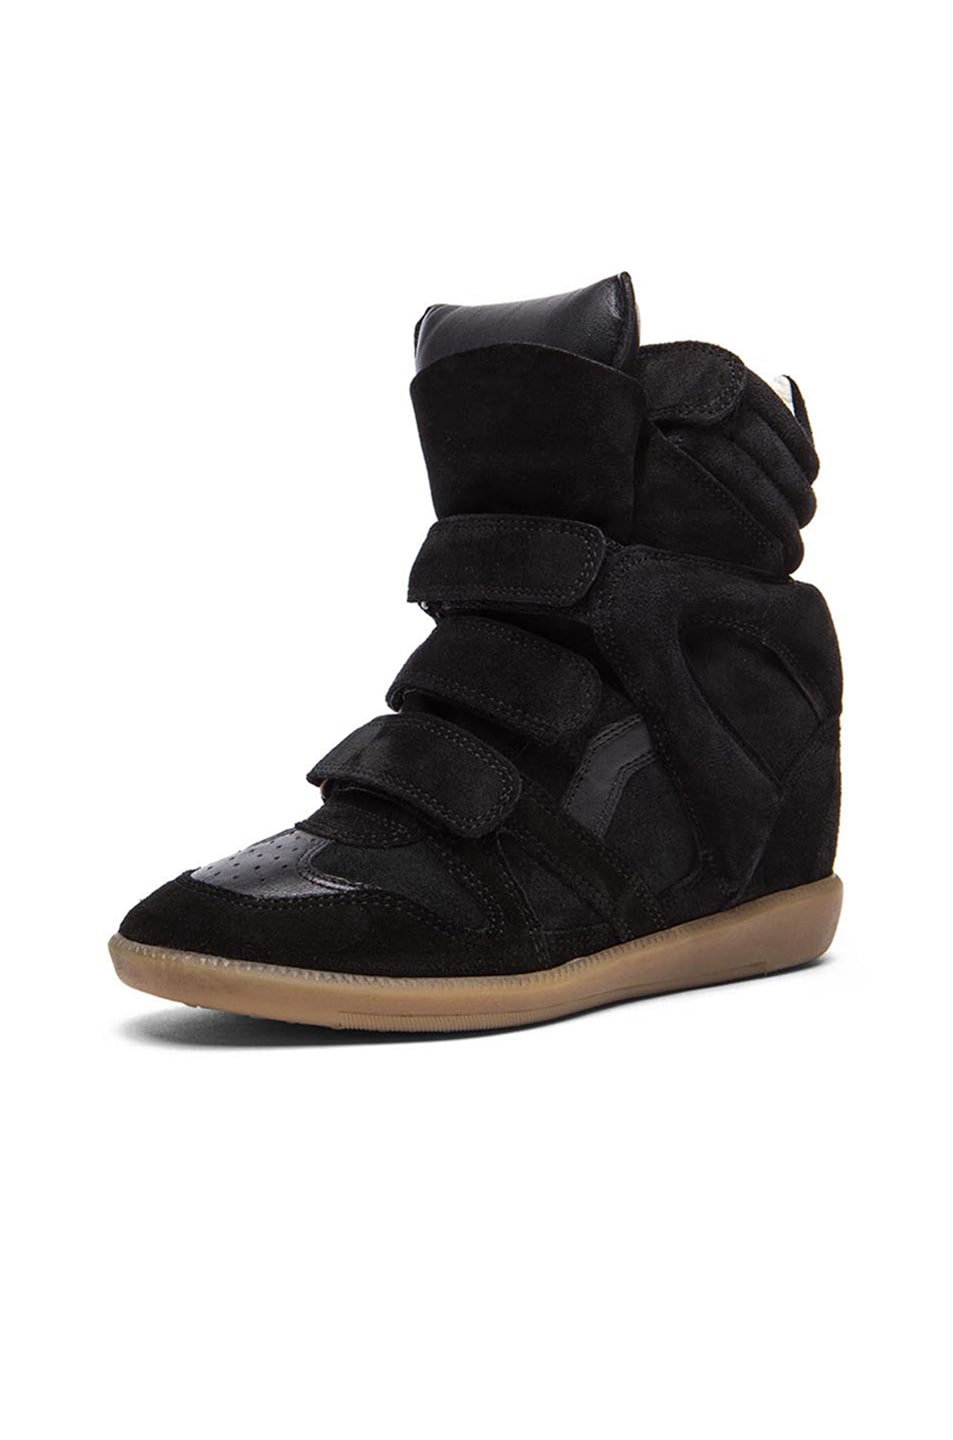 Isabel Marant Bekett Calfskin Velvet Leather Sneakers in Faded Black | FWRD